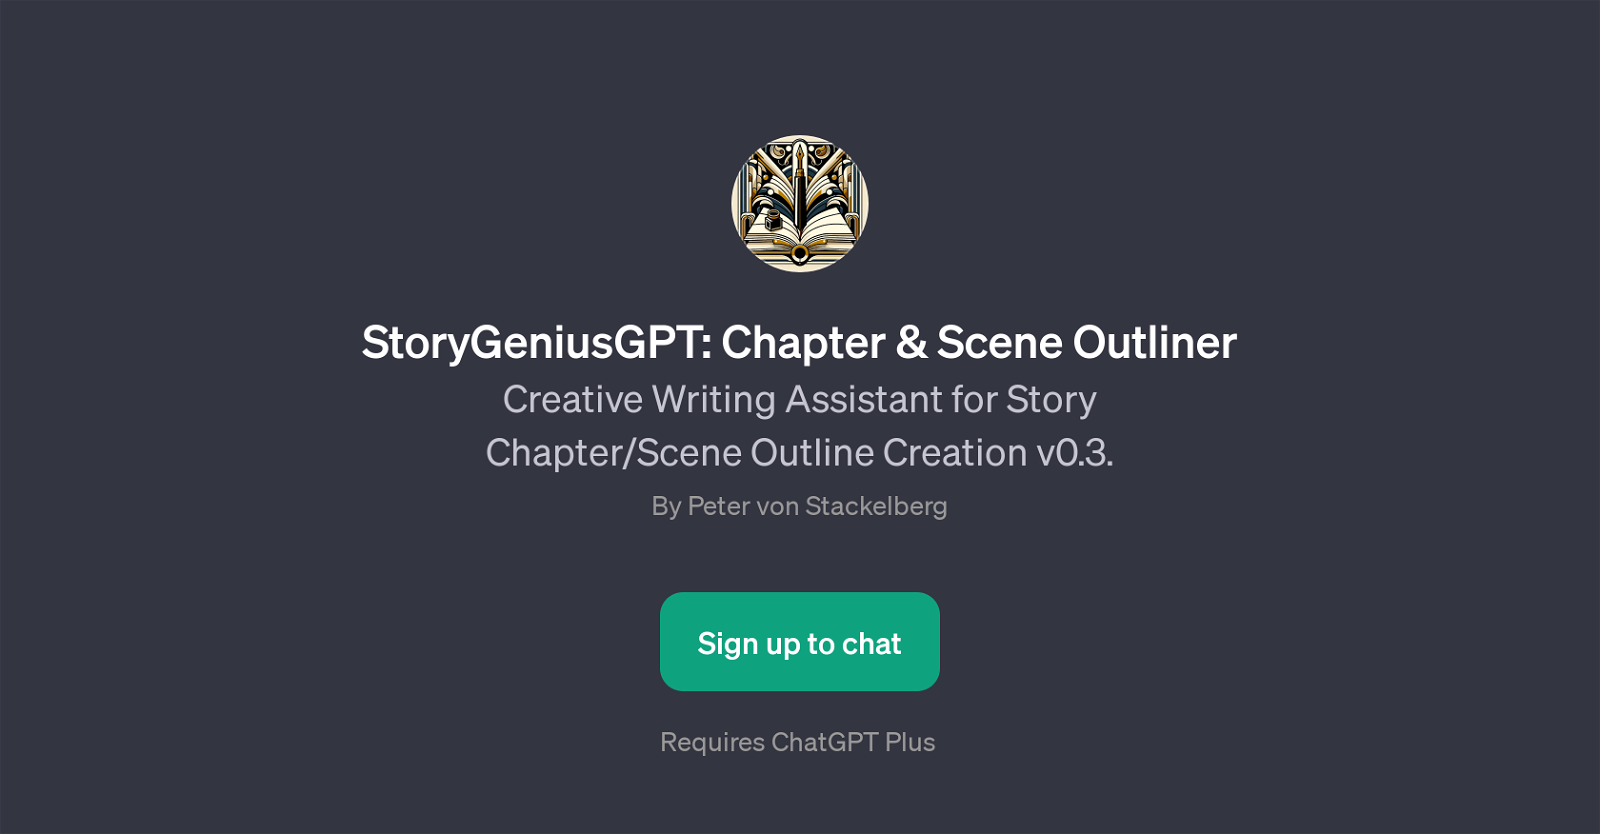 StoryGeniusGPT: Chapter & Scene Outliner website